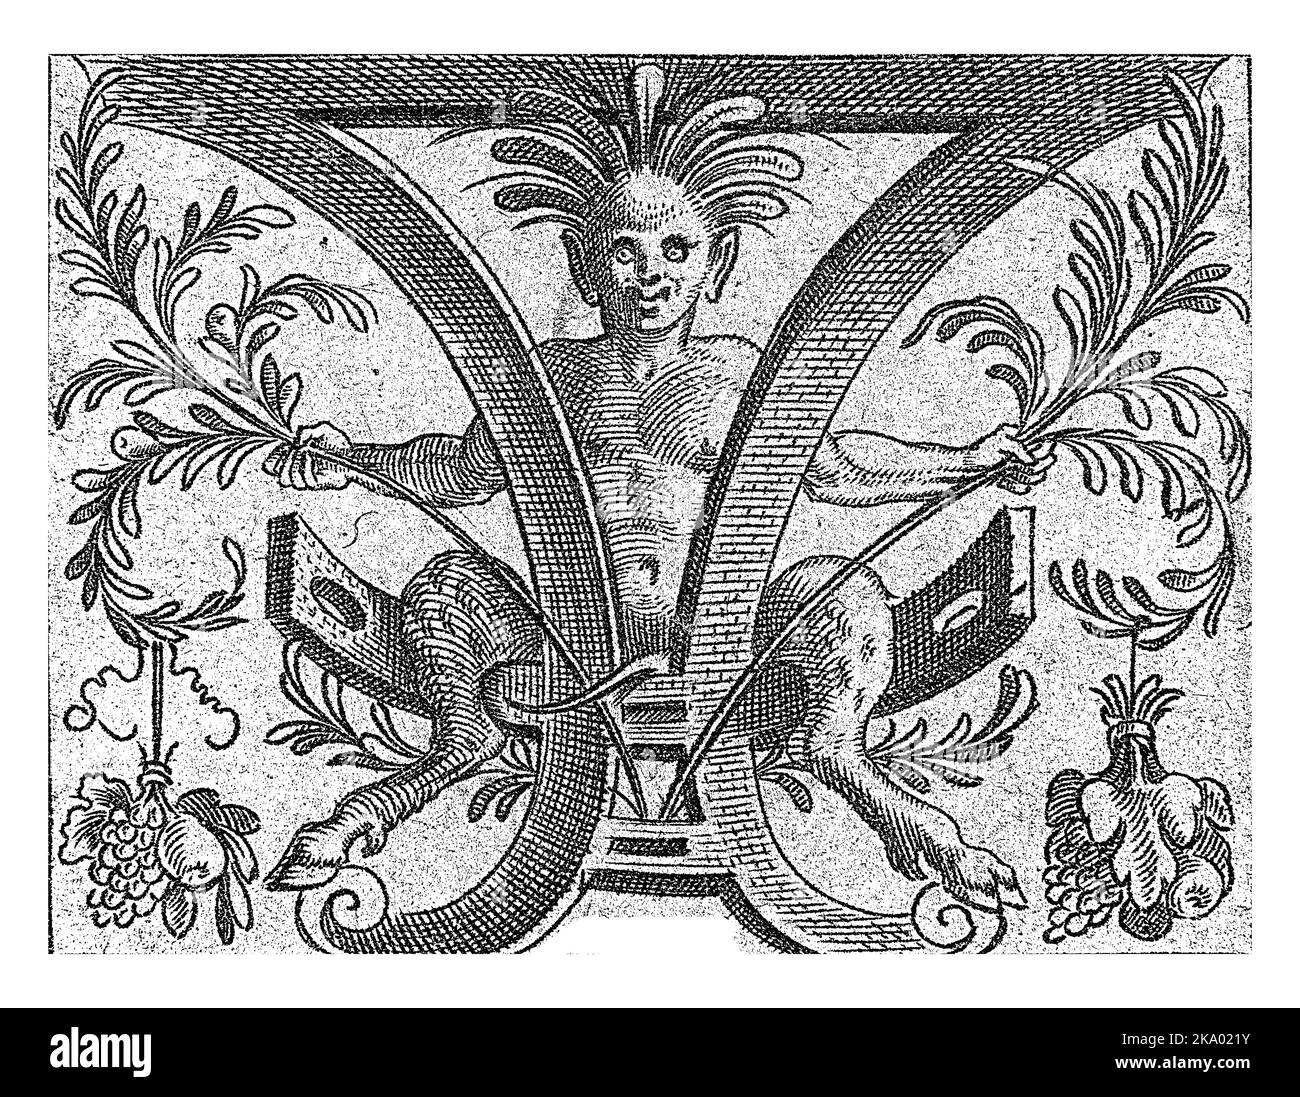 Satyr sitzt in einer Schriftrolle, anonym, nach Cornelis Bos, 1548 in jeder Hand hält der Satyr einen Lorbeerzweig, an dem ein Obsthaufen hängt. Eins Stockfoto